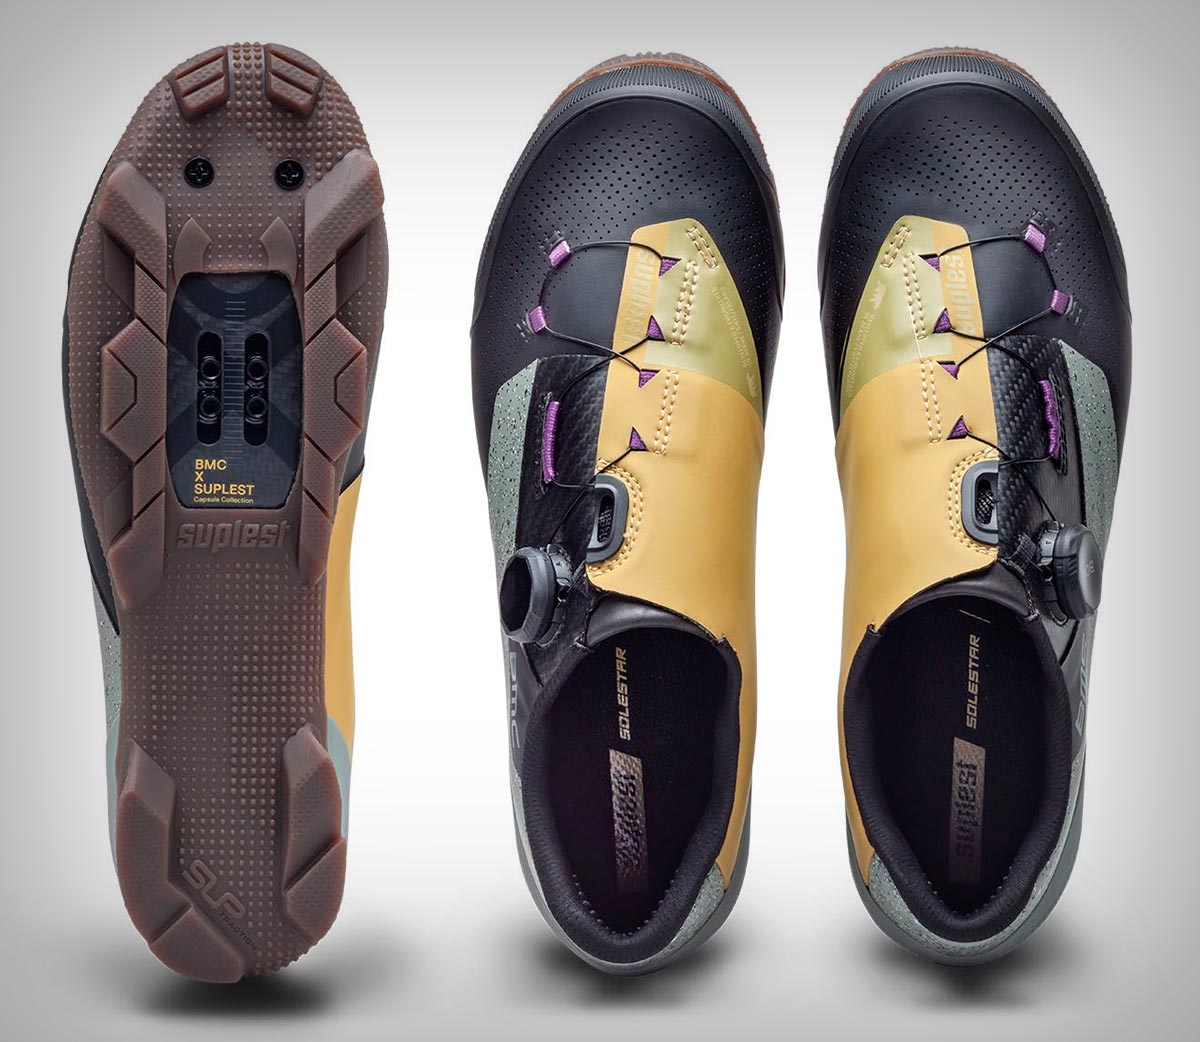 BMC y Suplest unen fuerzas para lanzar una edición limitada de zapatillas de carretera y gravel